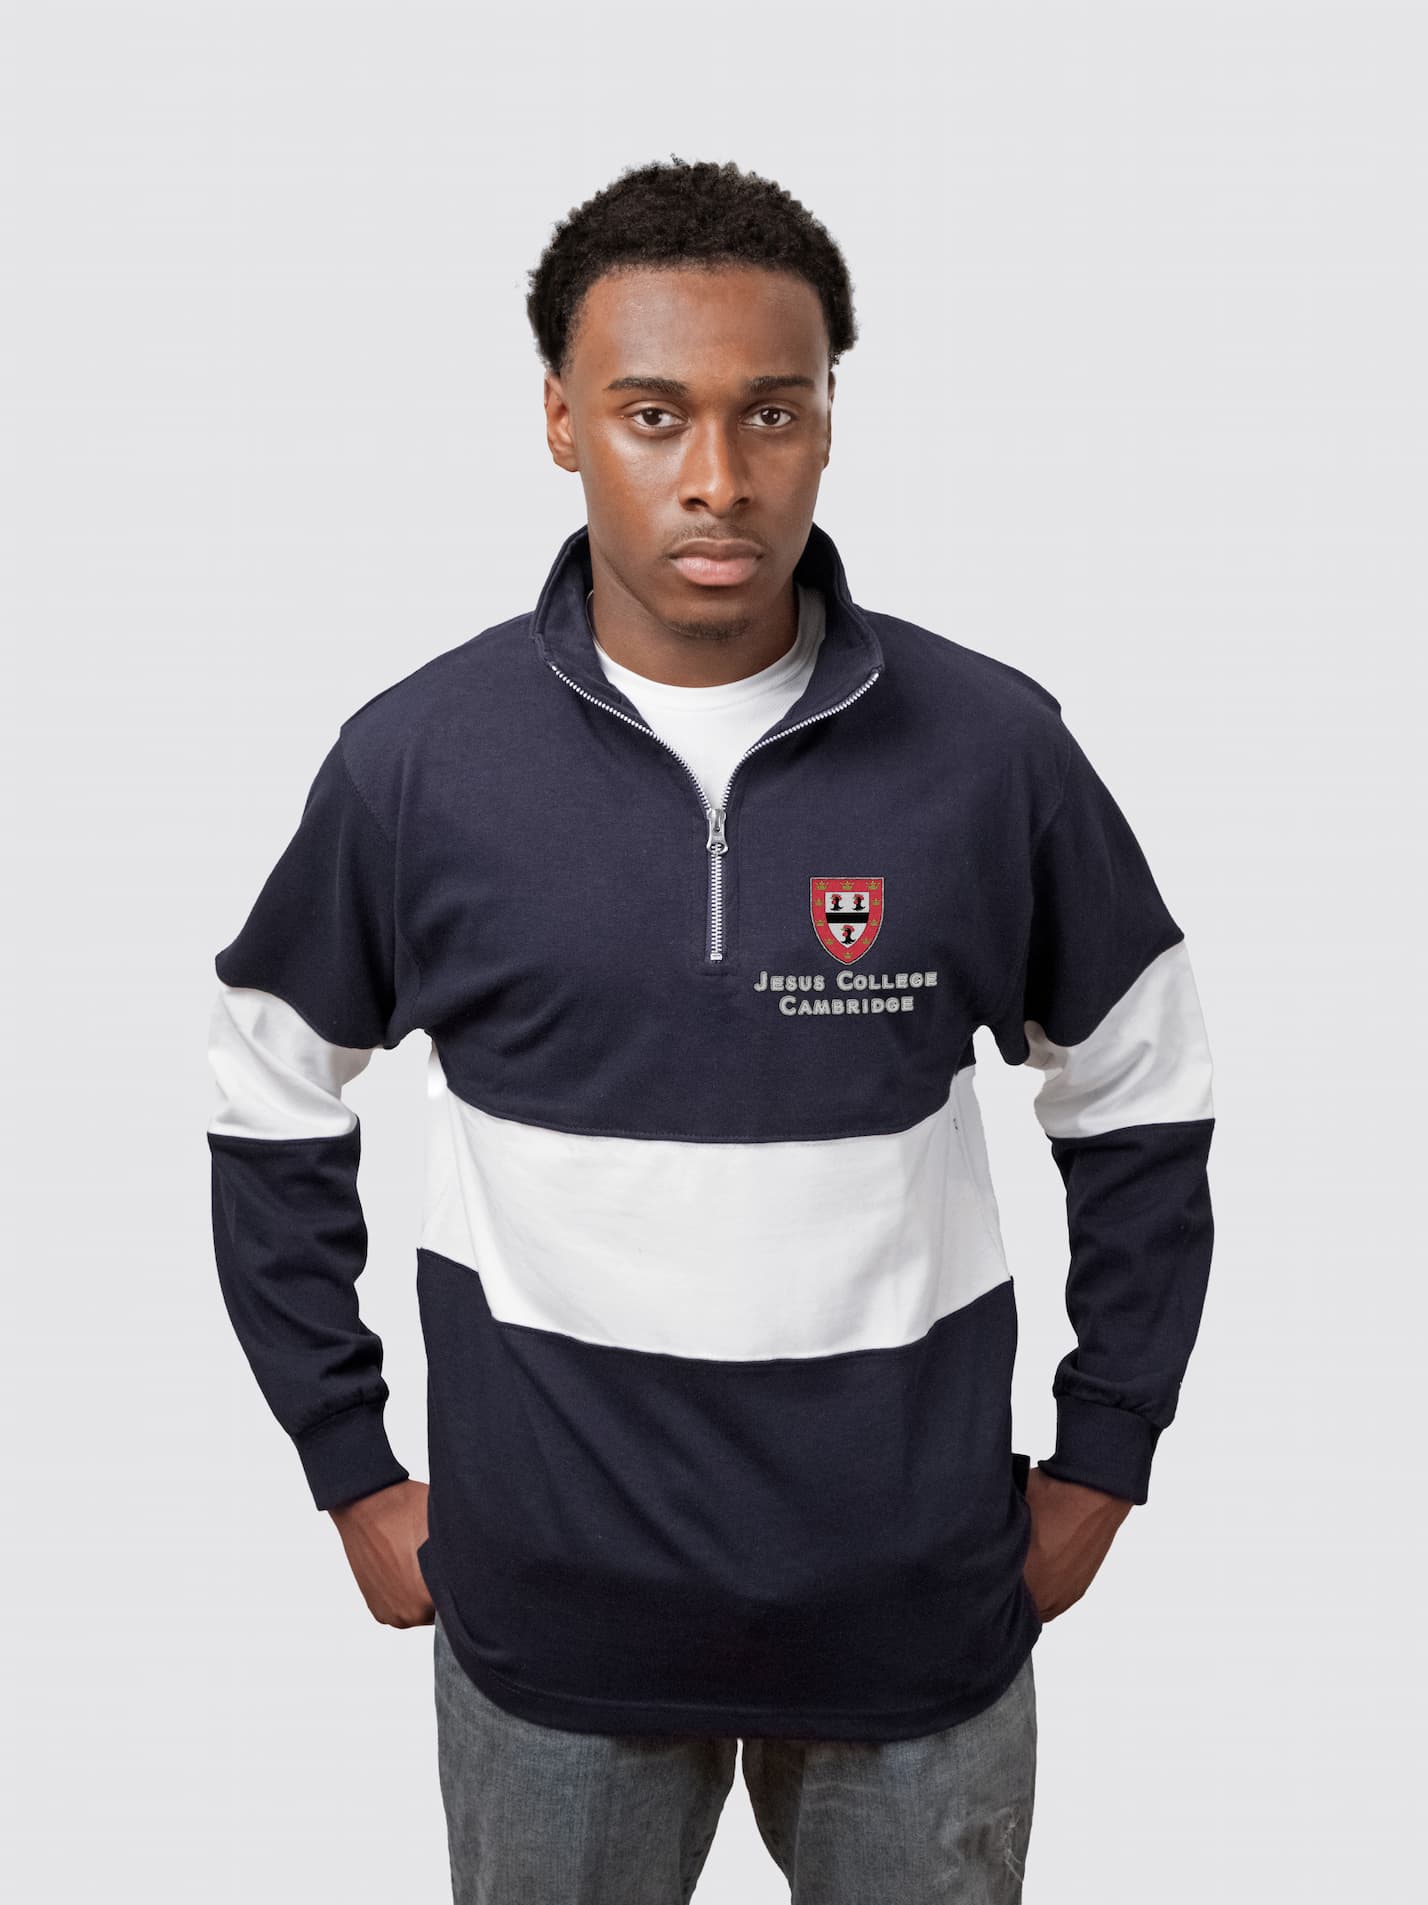 Jesus College Cambridge JCR Unisex Panelled 1/4 Zip Sweatshirt